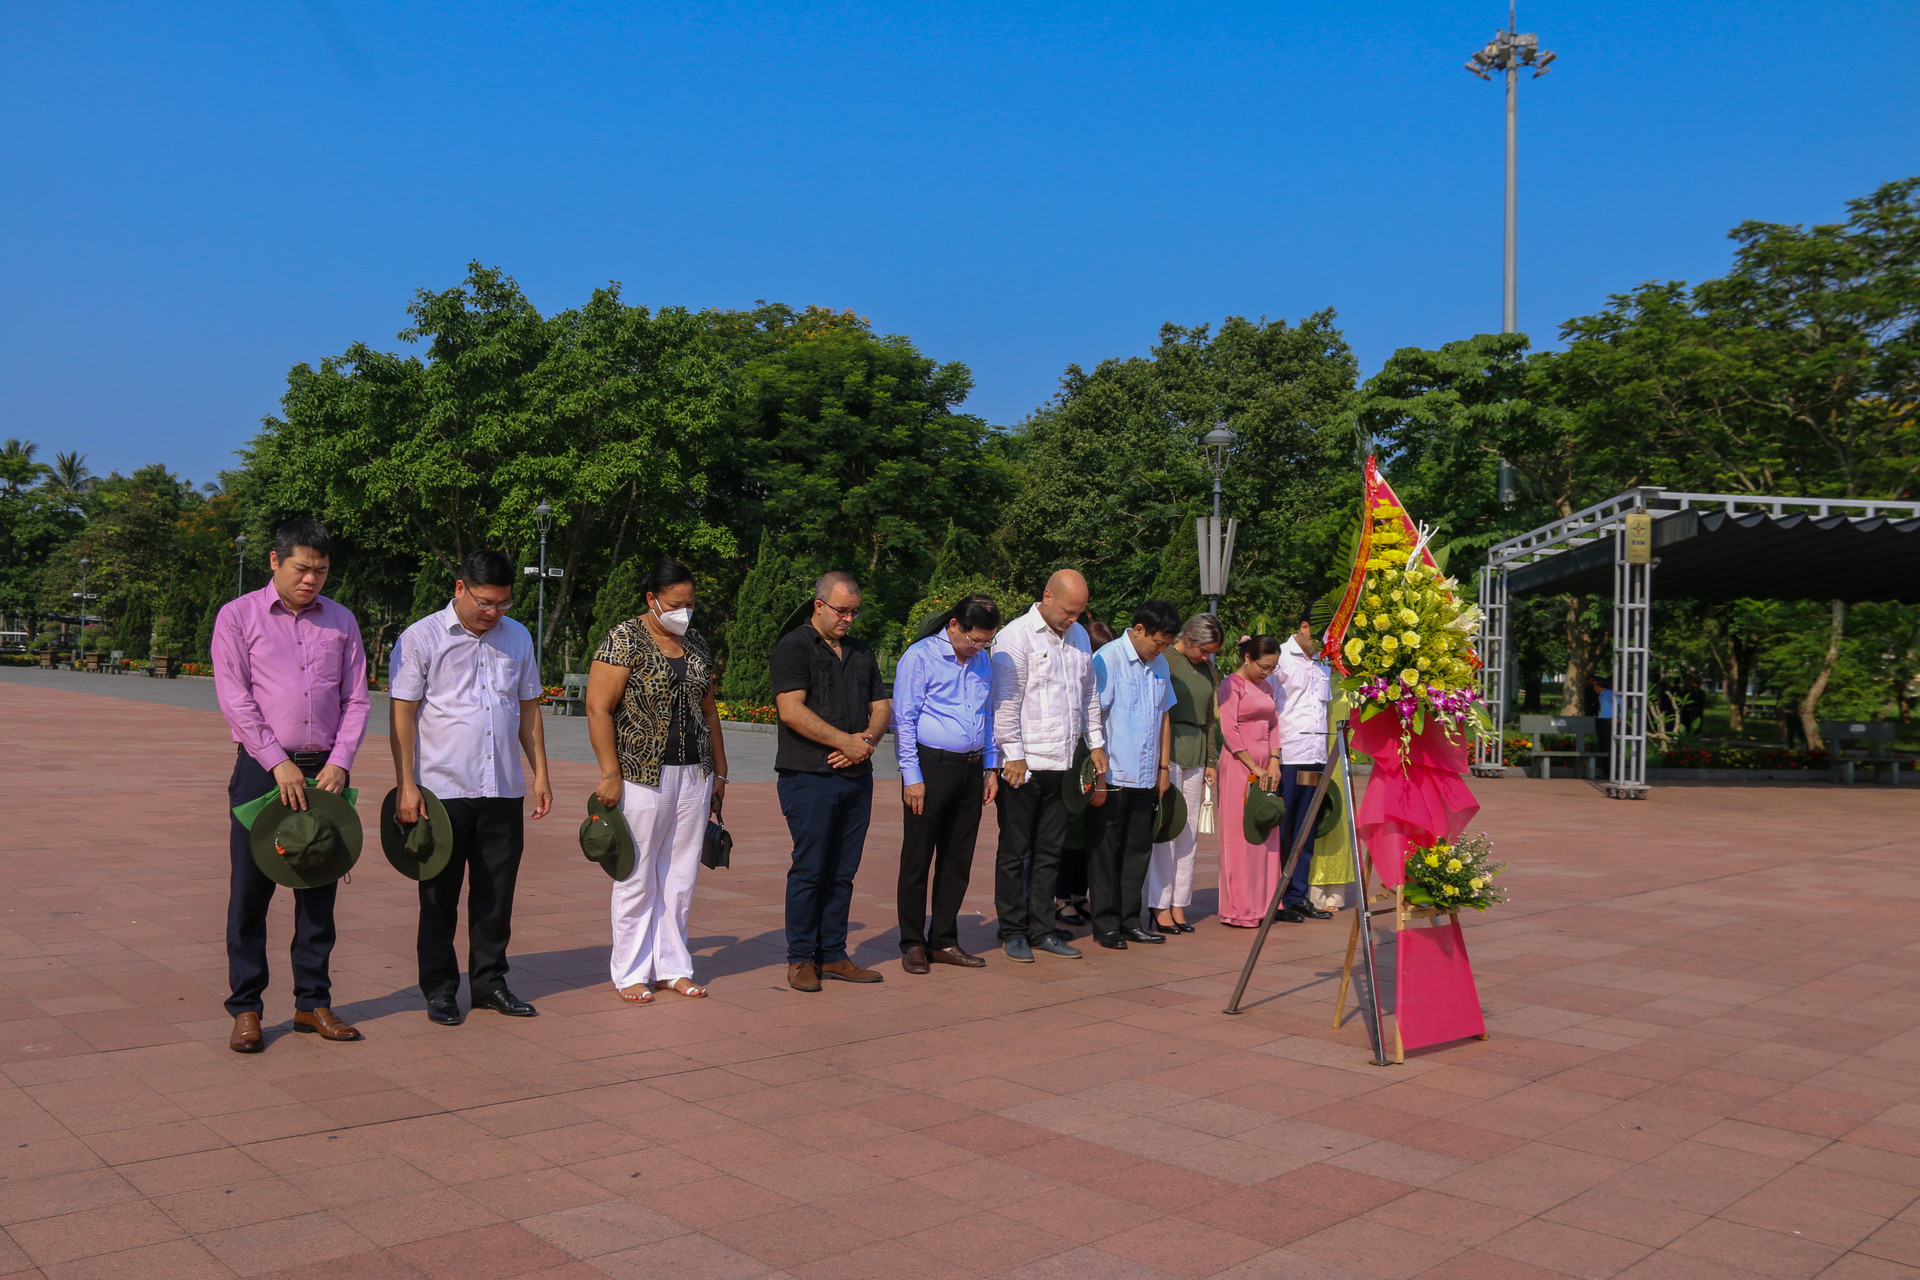 Đoàn đến thăm viếng tại Di tích Quốc gia đặc biệt Thành cổ Quảng Trị và dành phút mặc niệm tưởng nhớ các anh hùng liệt sĩ đã hi sinh anh dũng trong cuộc chiến đấu 81 ngày đêm.